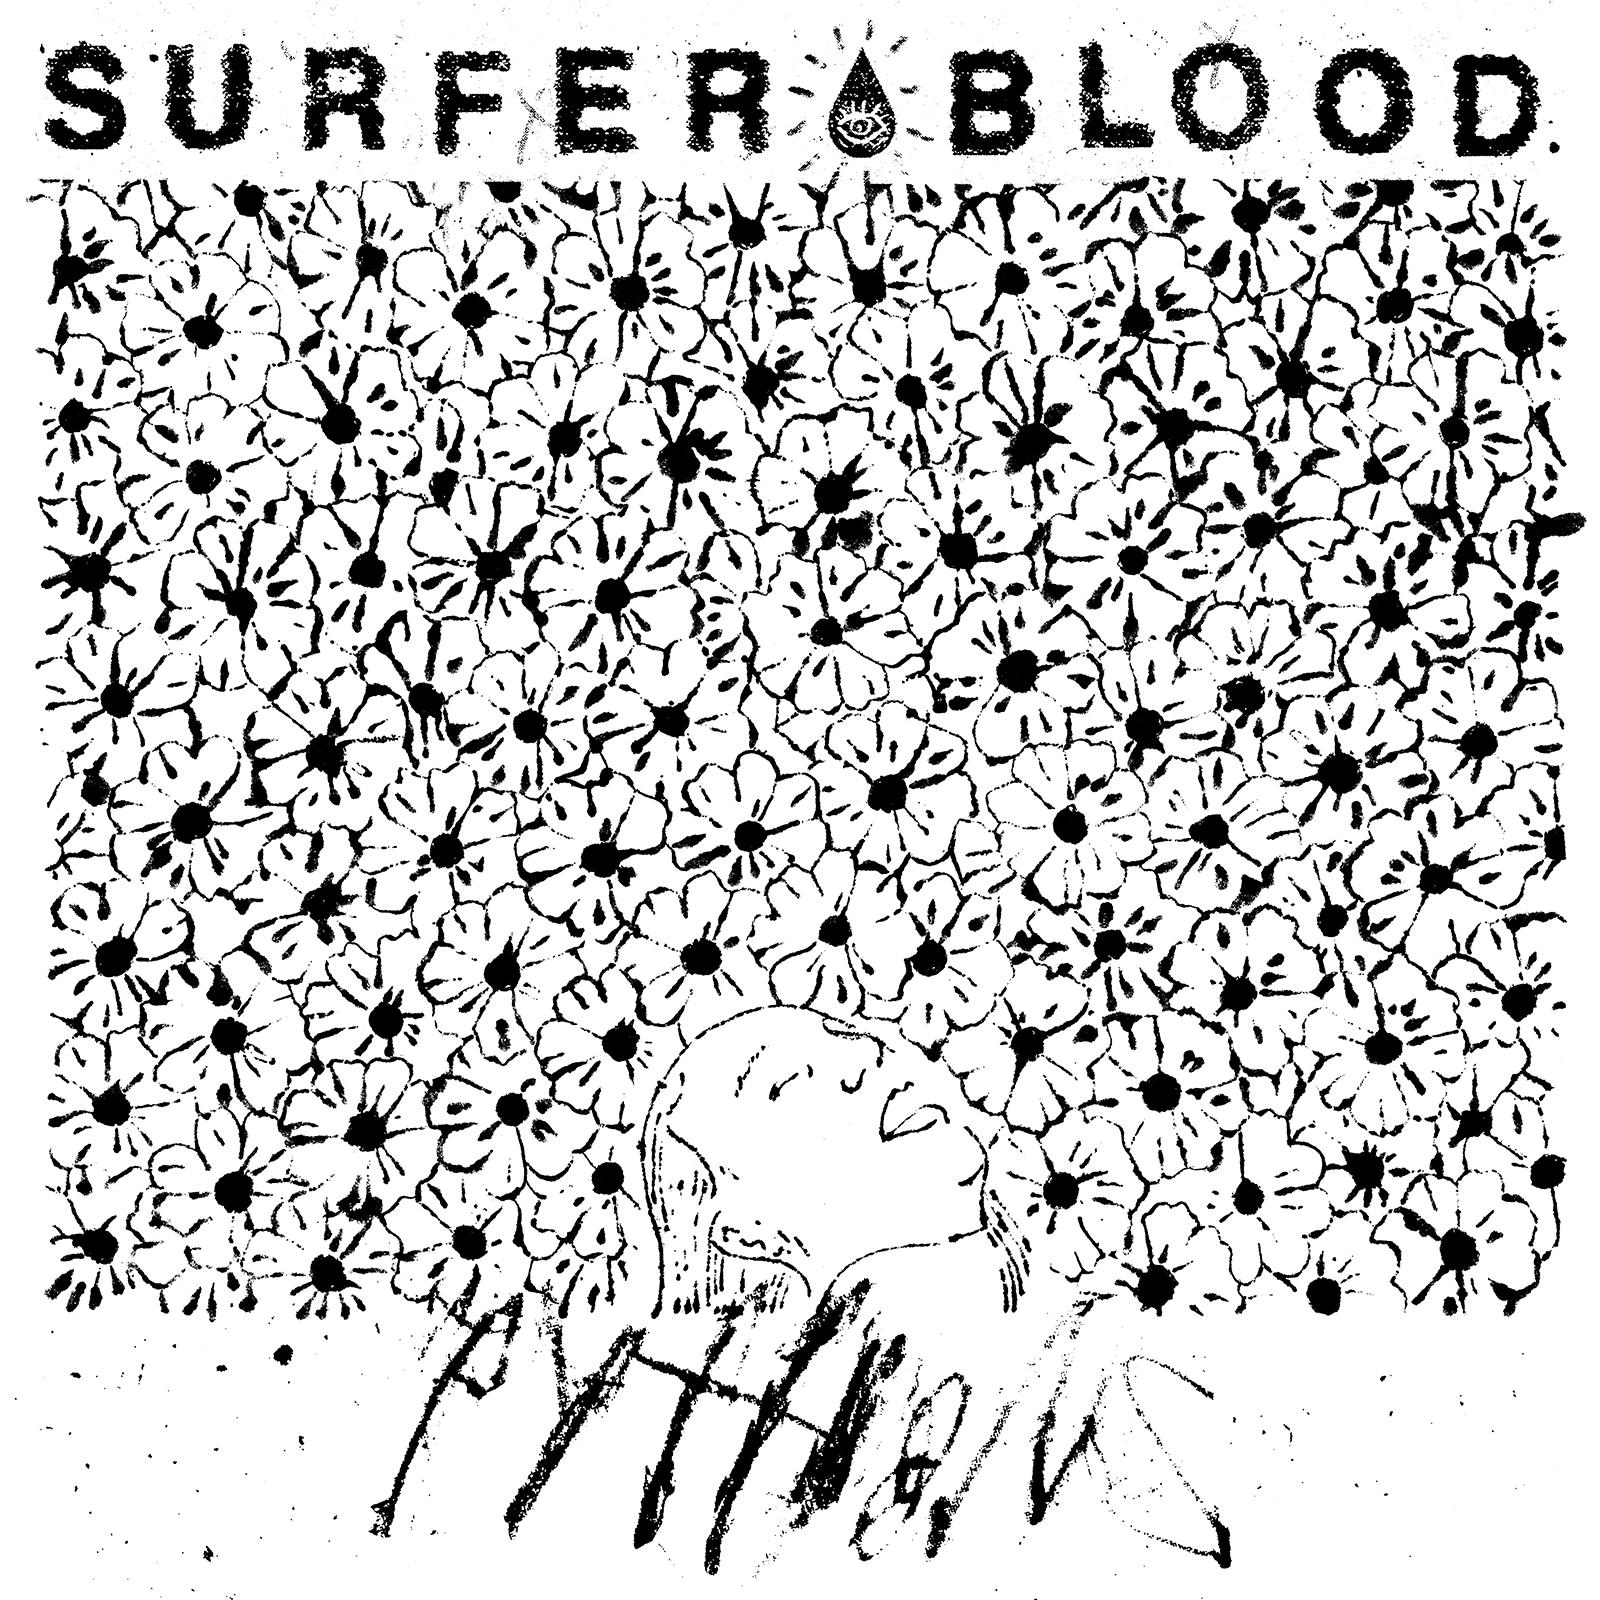 Surfer Blood